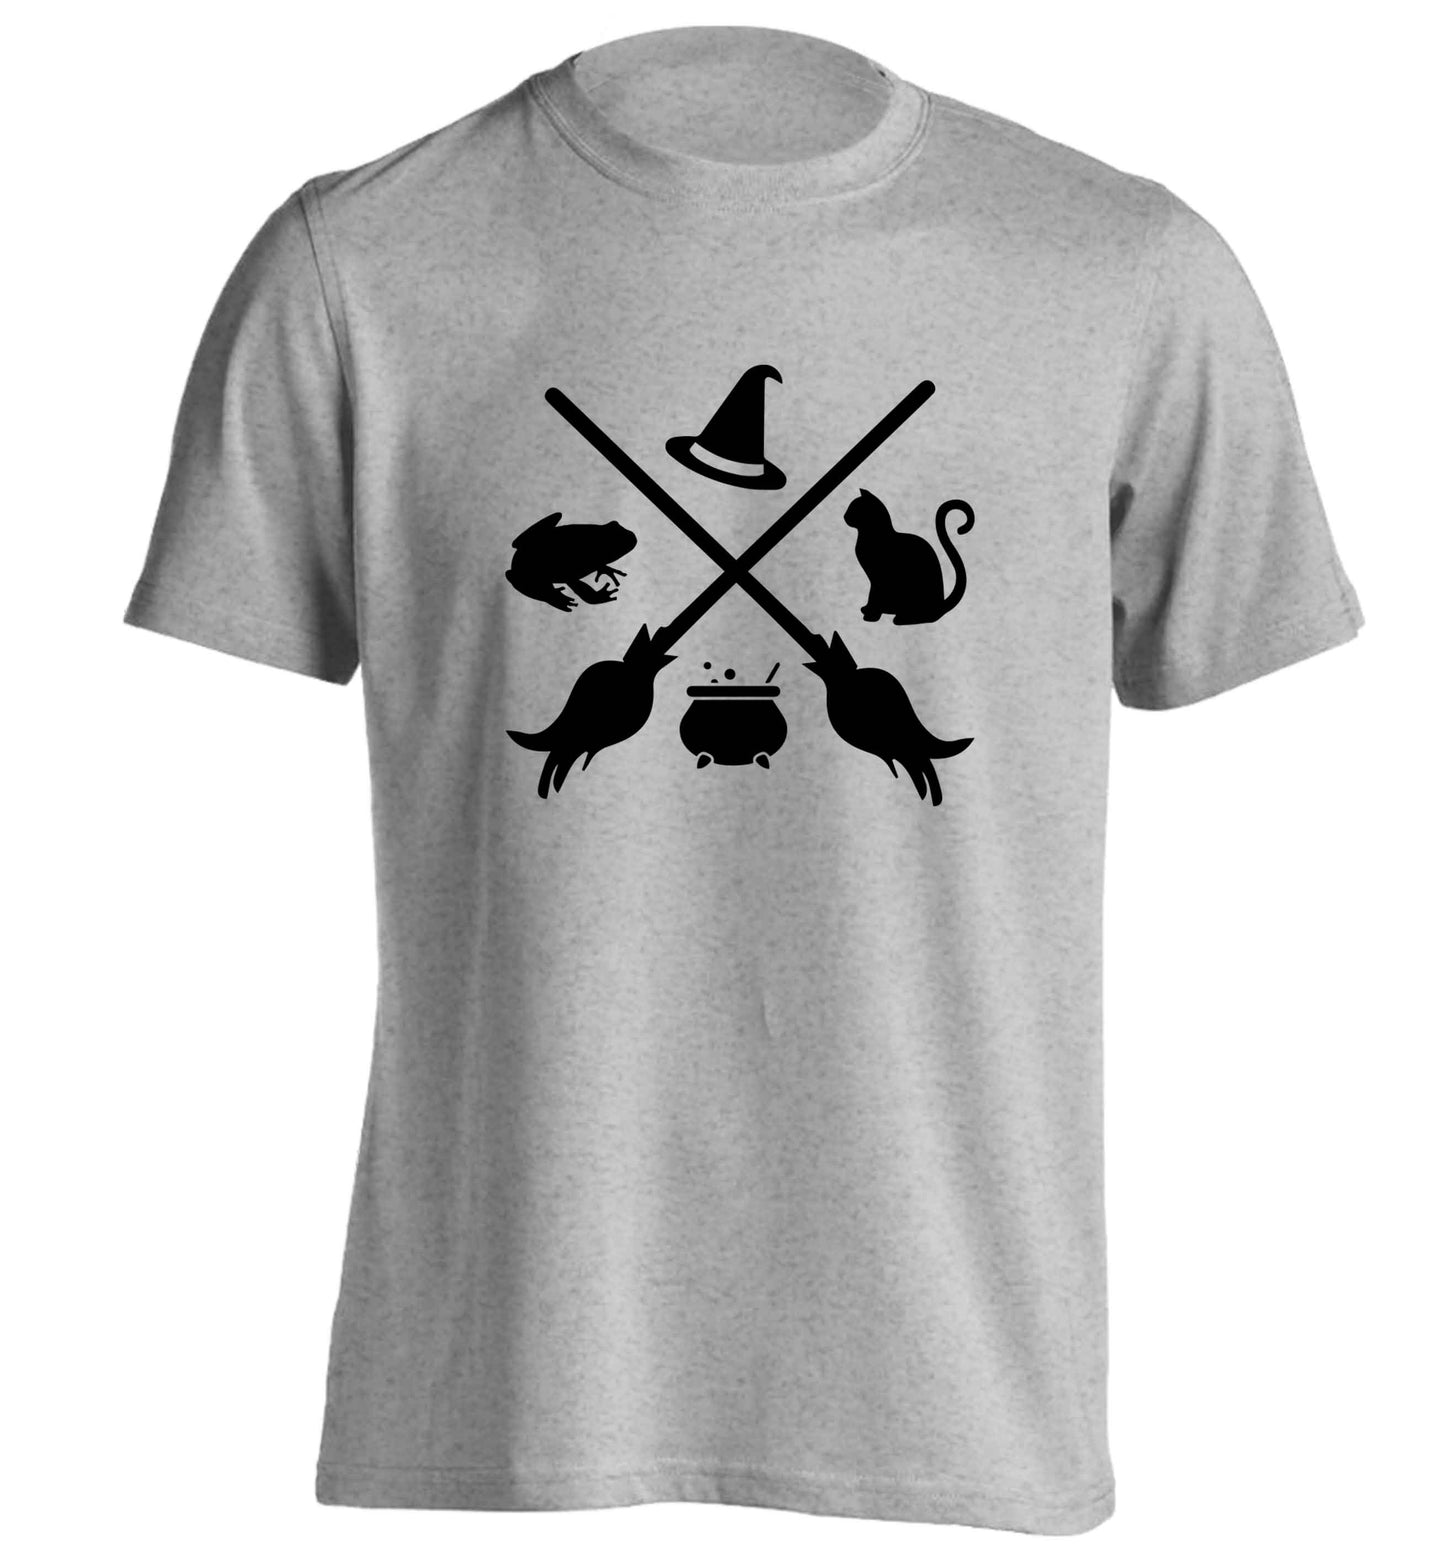 Witch symbol adults unisex grey Tshirt 2XL